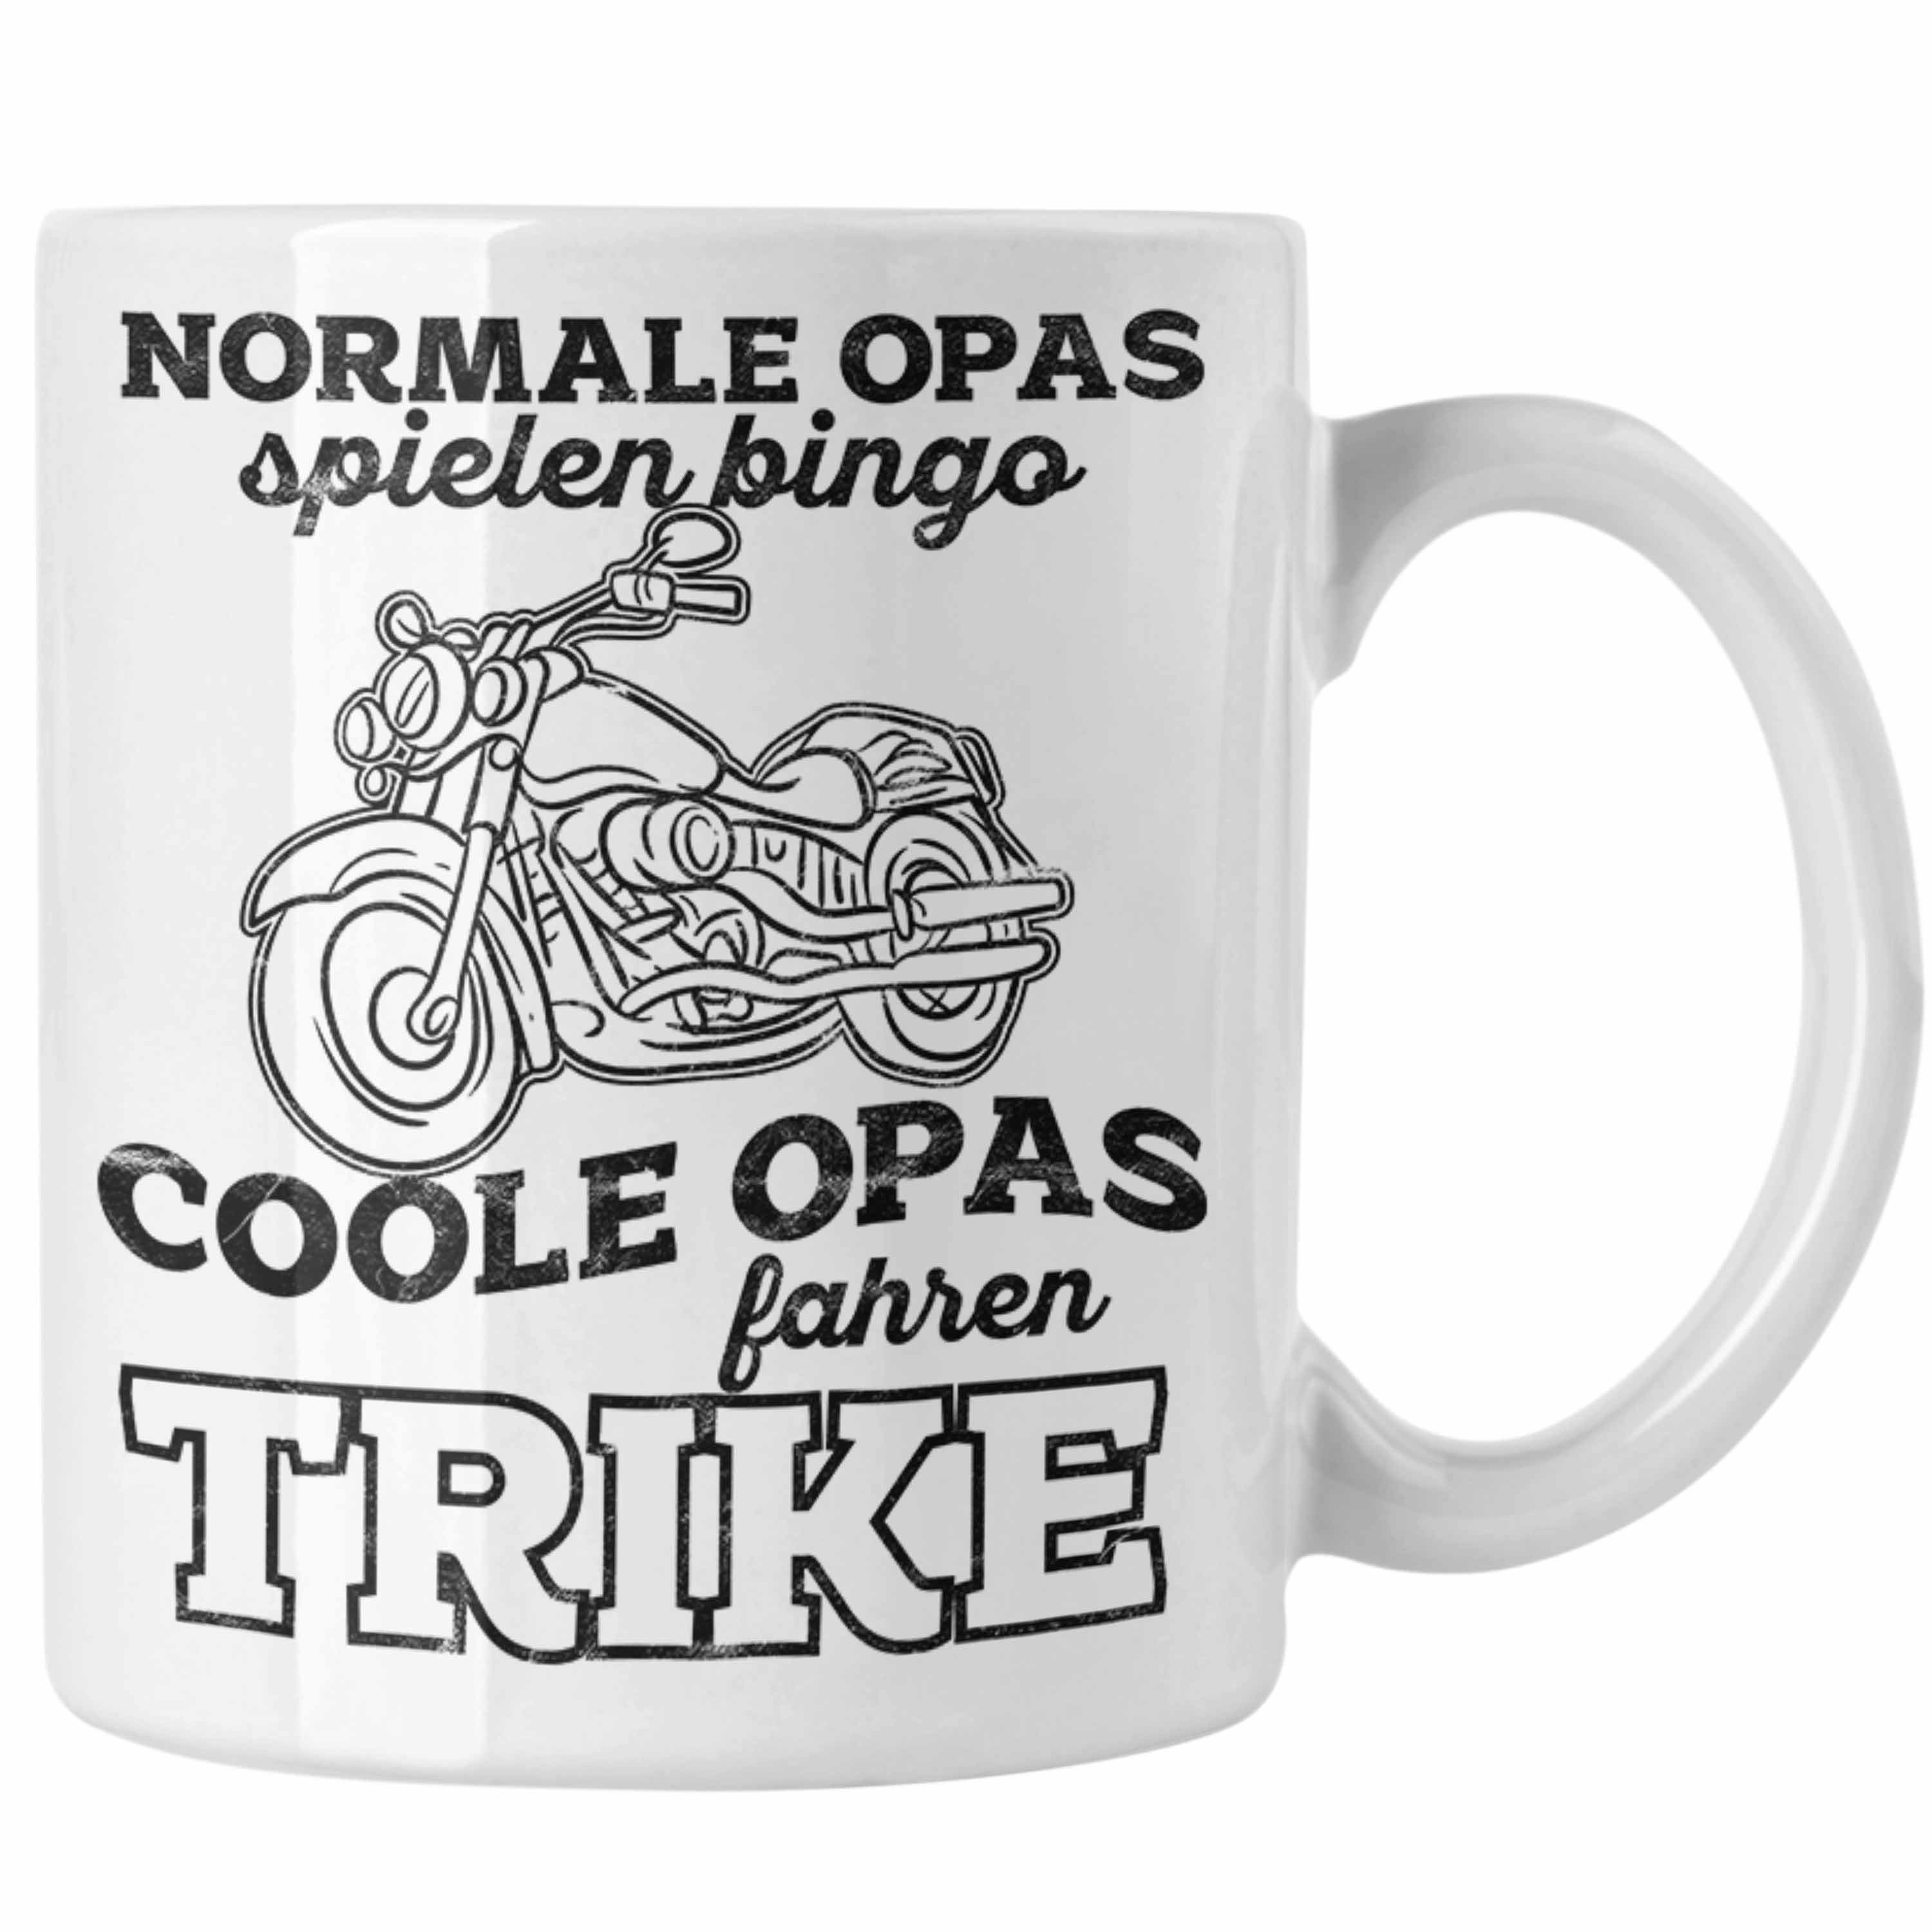 Trendation Tasse Tasse für Opa Geschenk für Trike Fahrer Geschenkidee Lustig Weiss